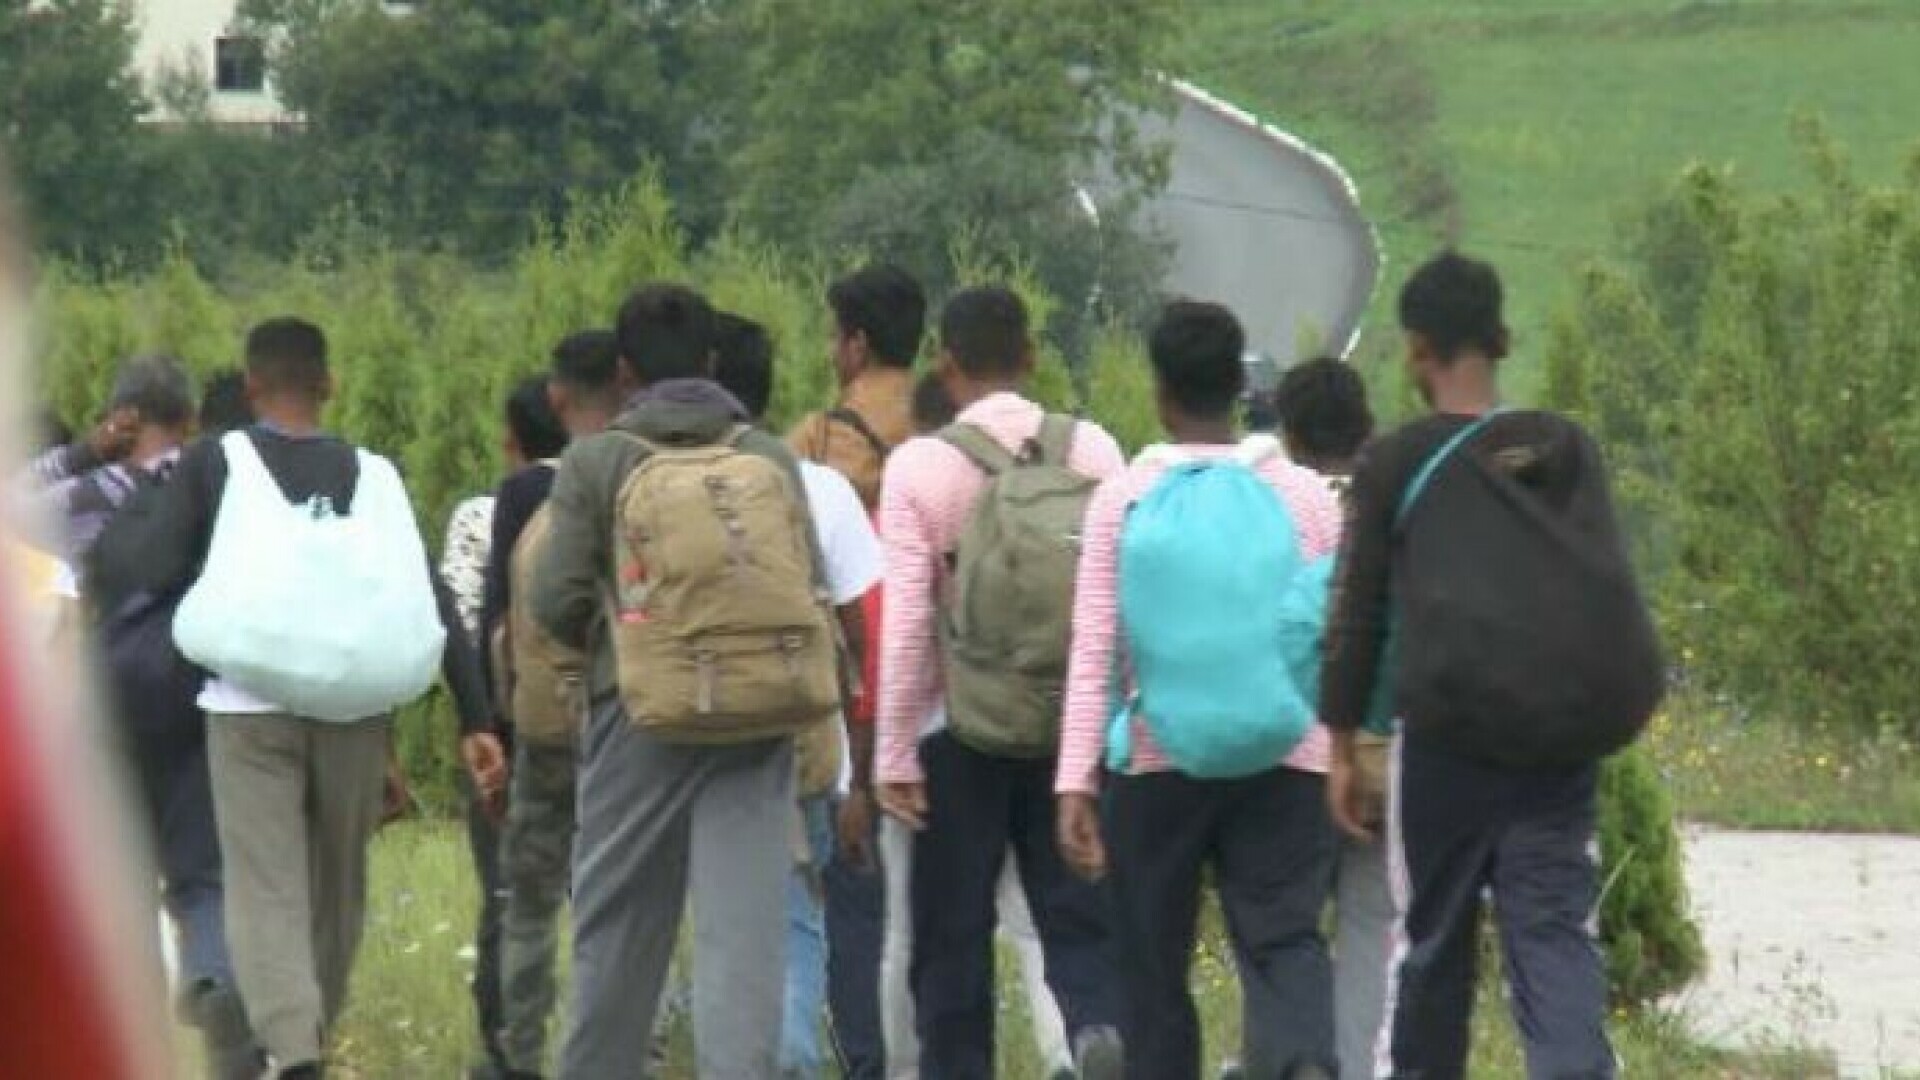 Slovenija pozvala Hrvatsku da zaštiti granicu! Porast broja ilegalnih prelazaka kod Brežica, oporba želi vojsku na granici